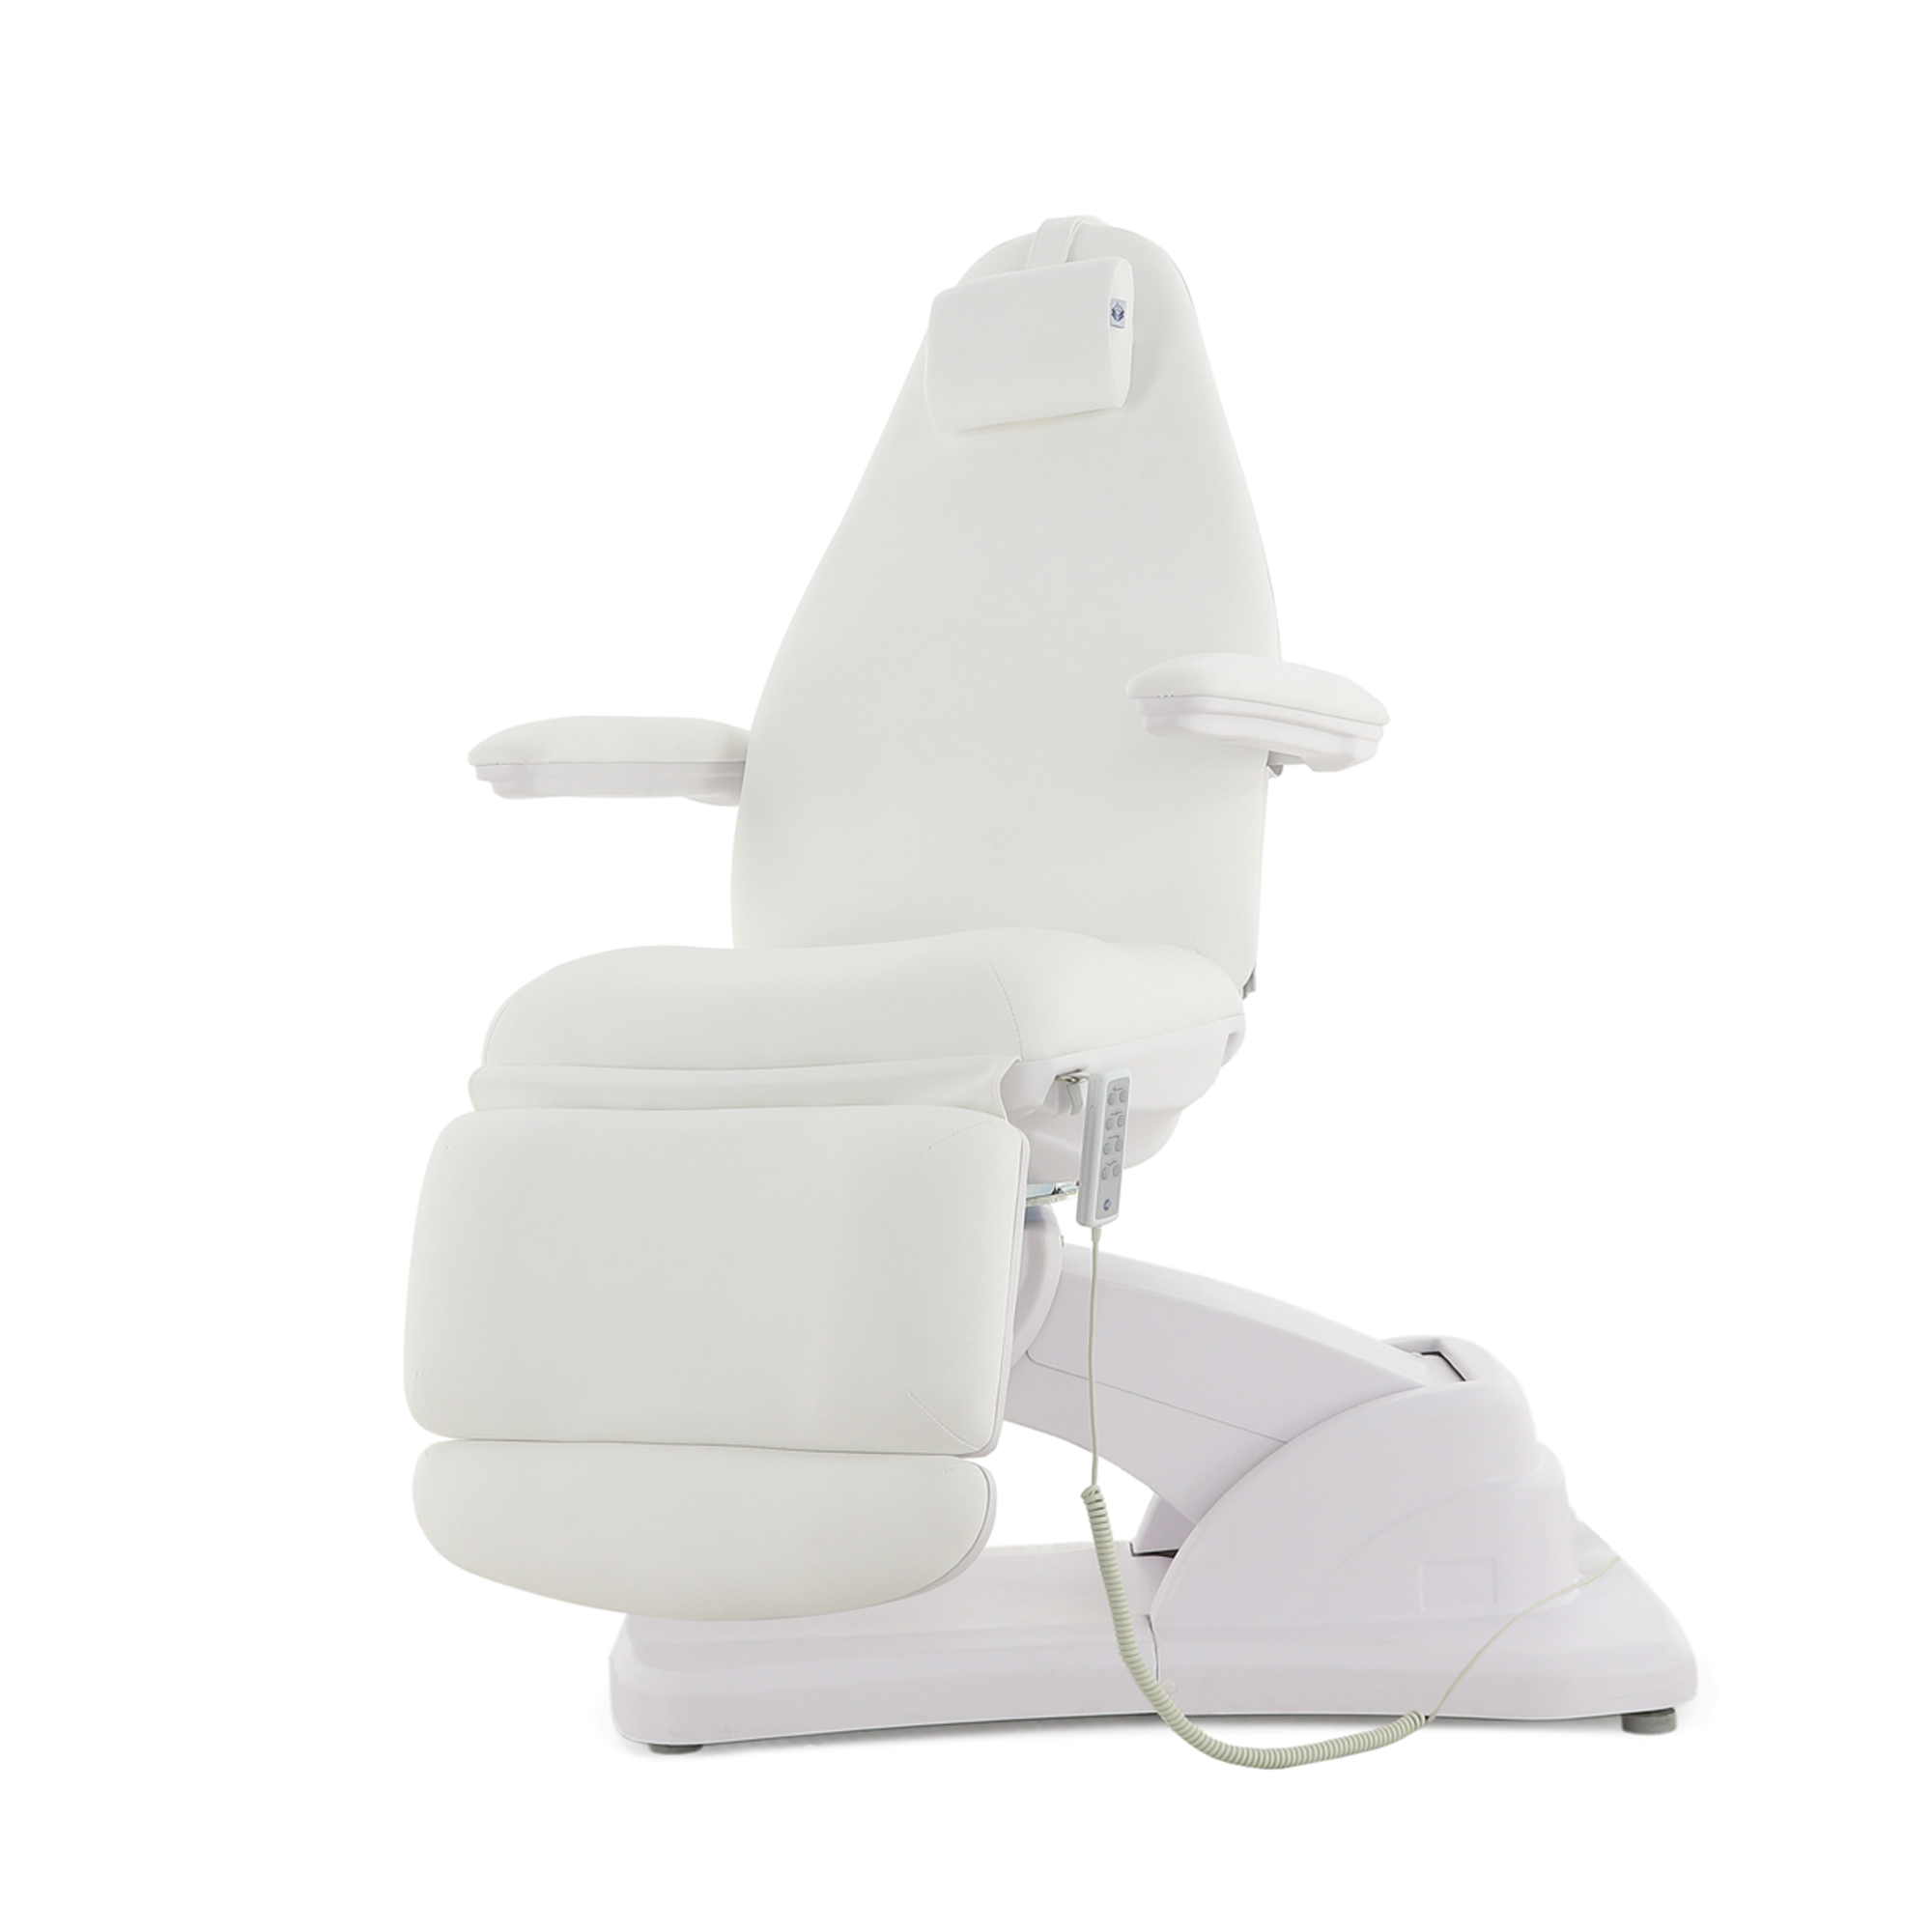 Косметологическое кресло MM-940-1B (КО-187Д-00)